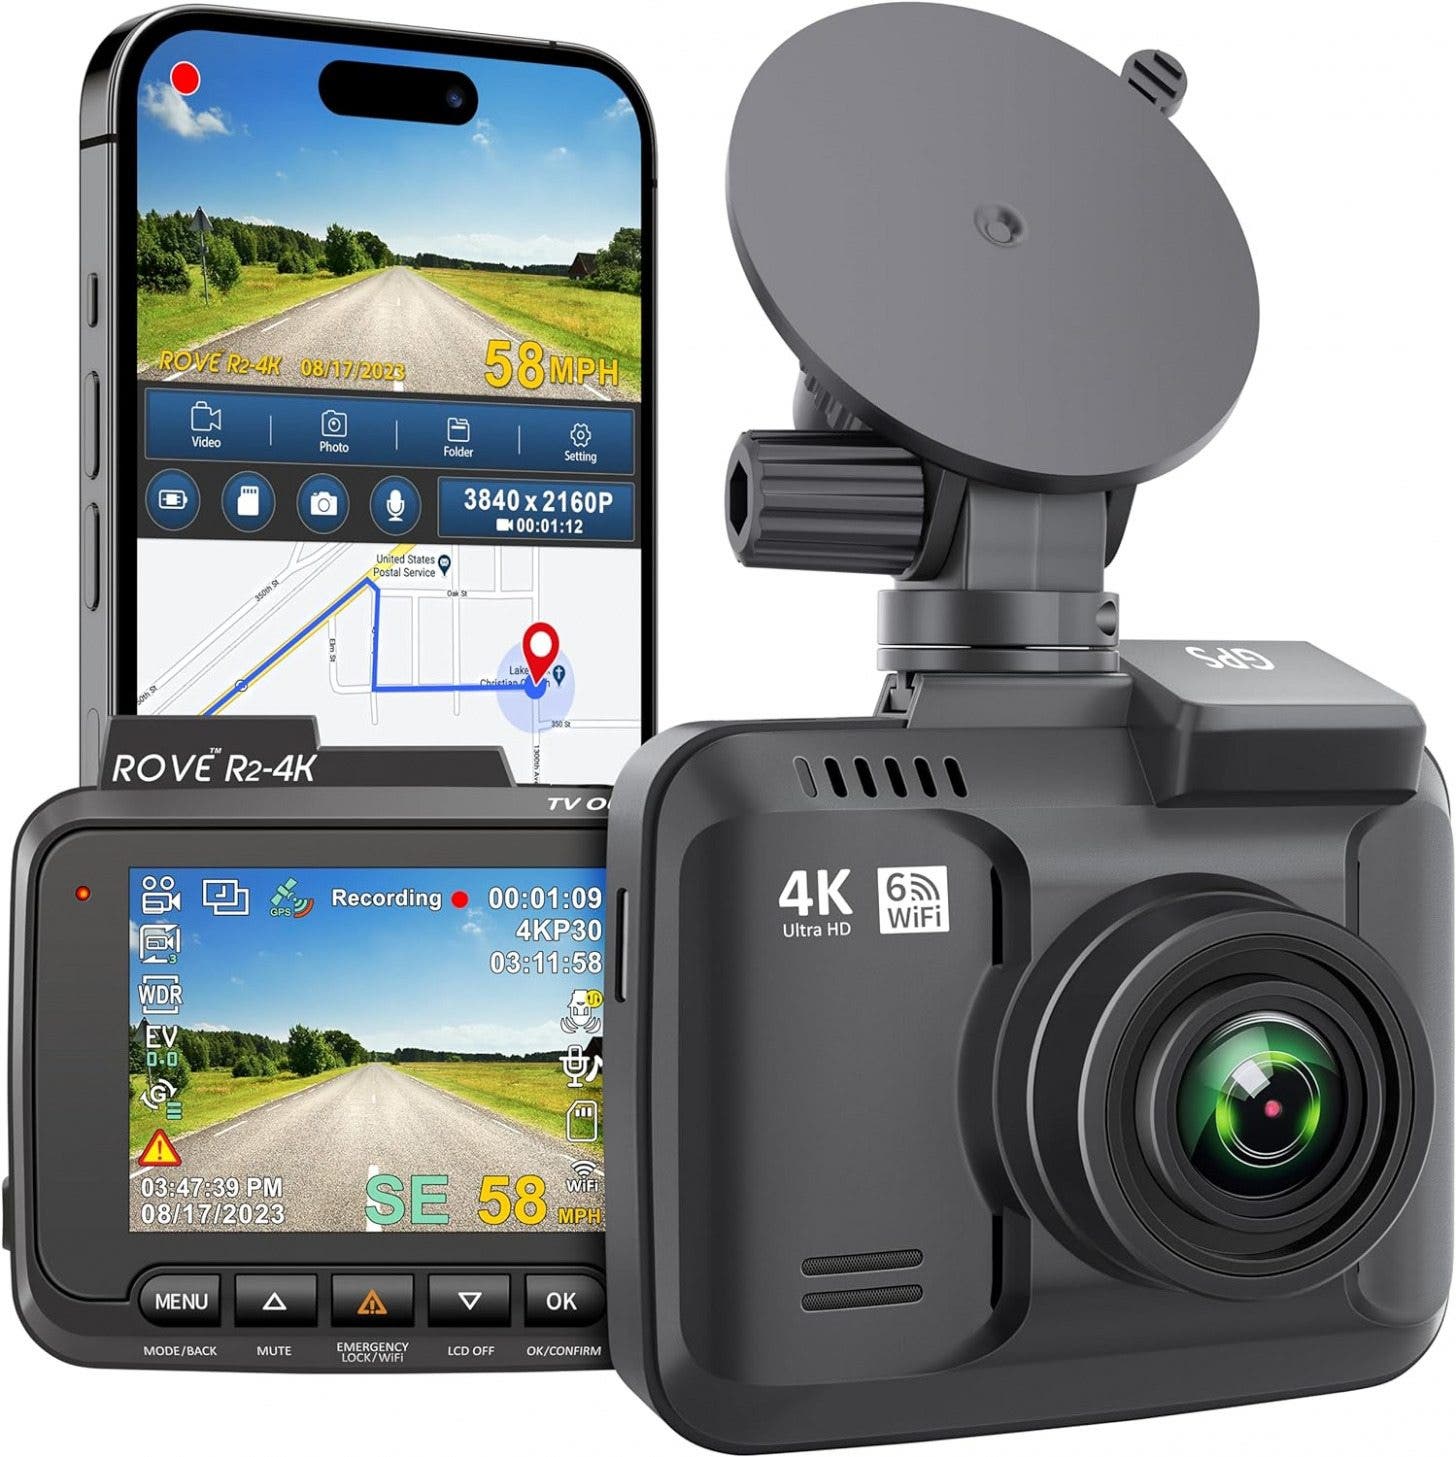 Rove R2-4K bilkamera med inbyggd WiFi och GPS (19,99)